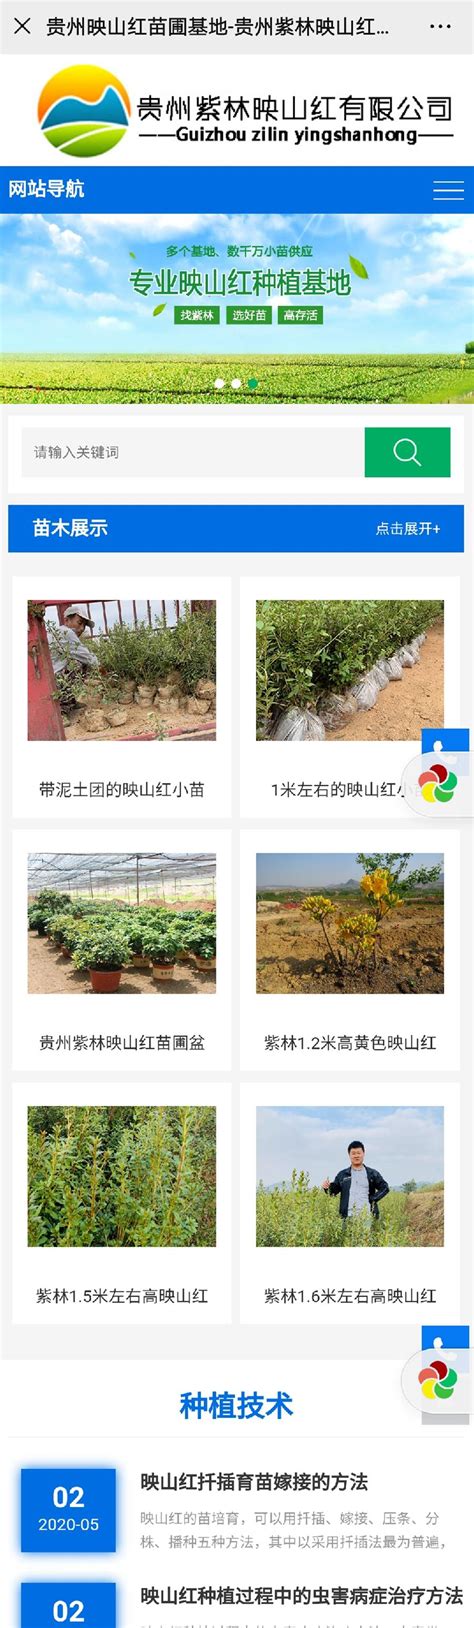 汇特通公司祝贺贵州紫林映山红绿化工程有限公司独立网站建设完成--汇特通大数据网